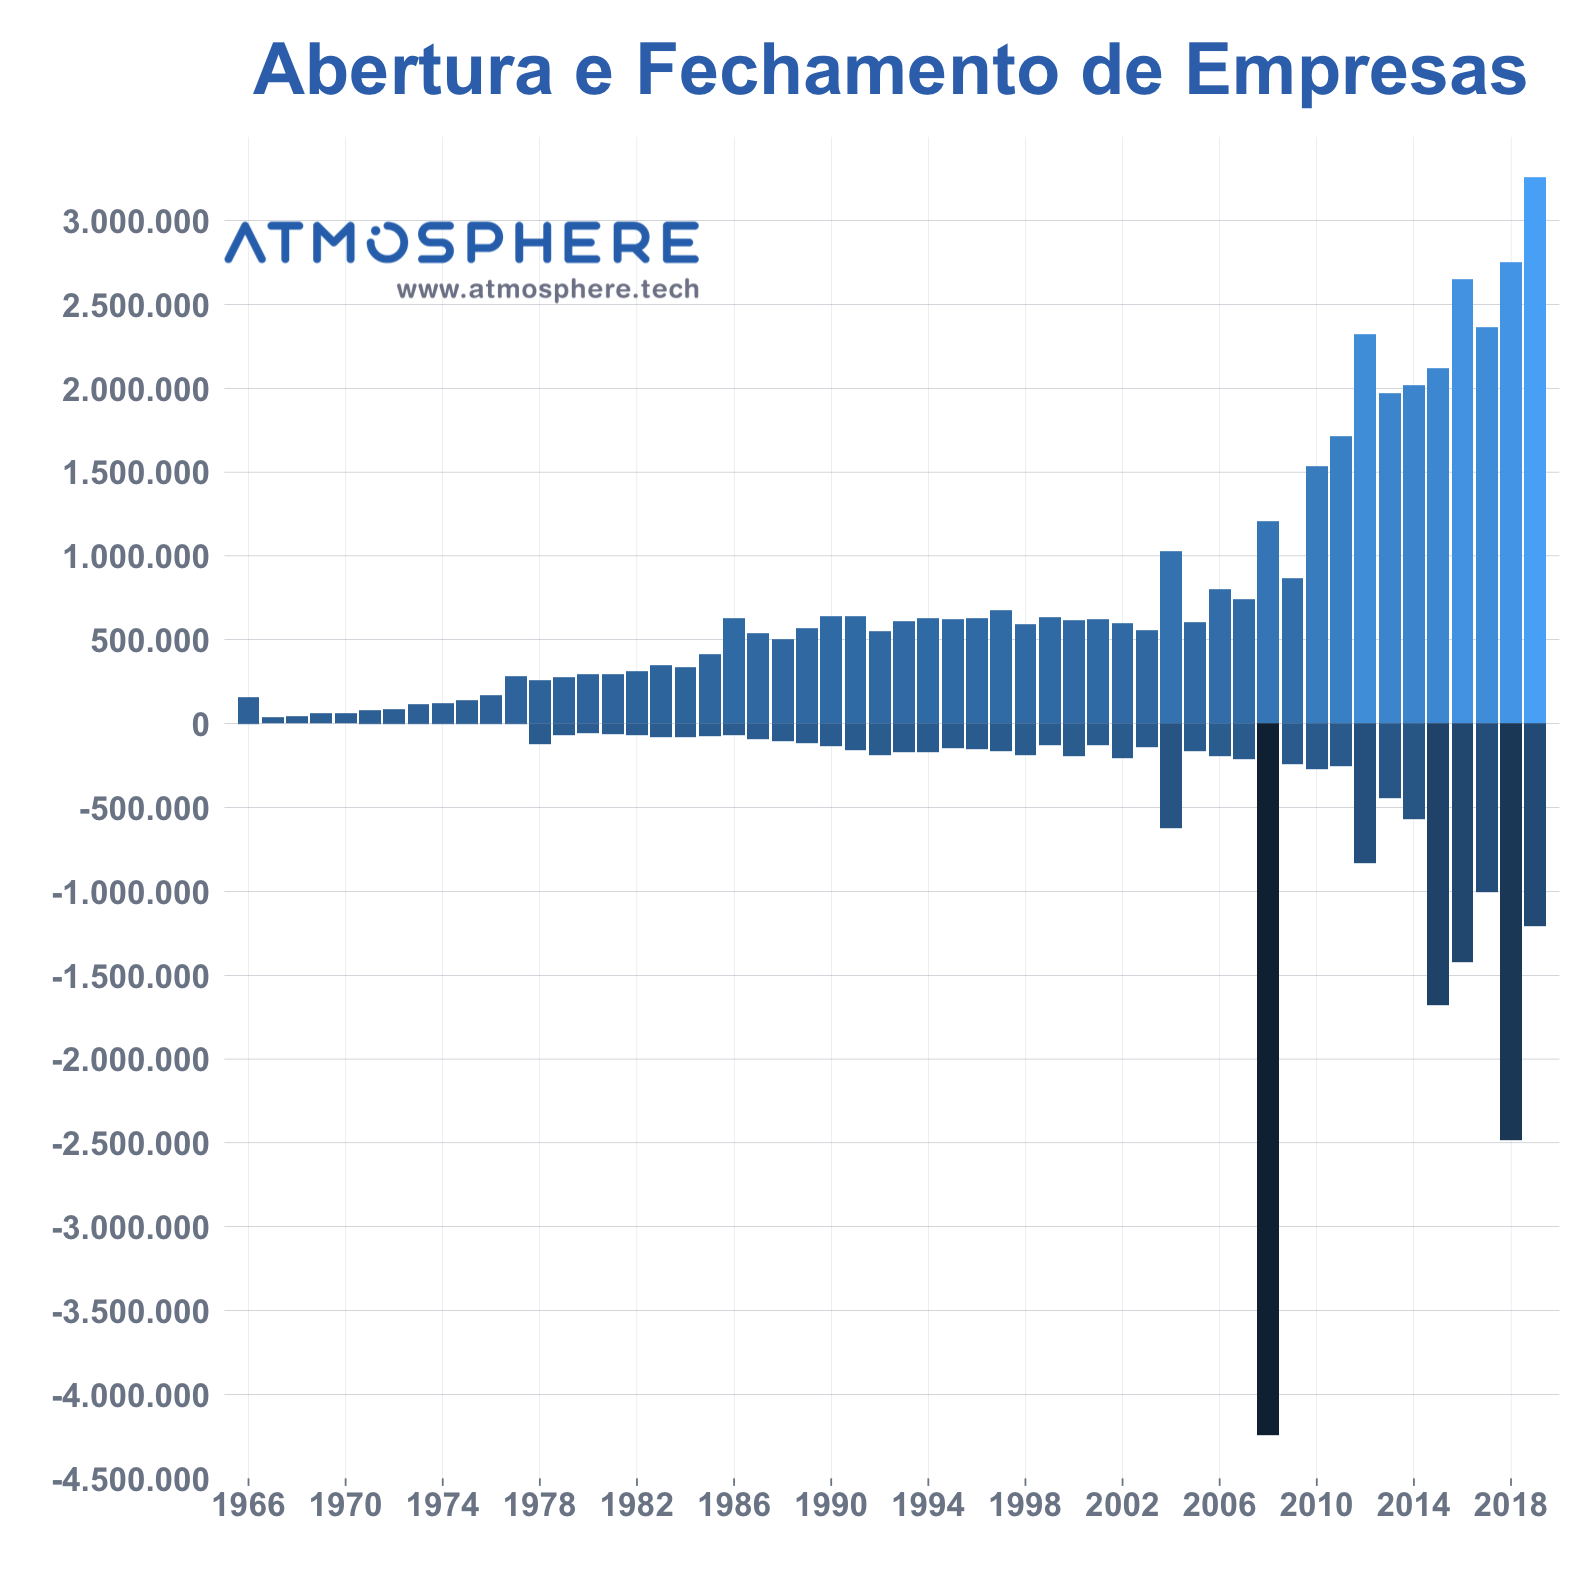 Atmosphere Abertura e Fechamento de Empresas entre 1966 e 2019